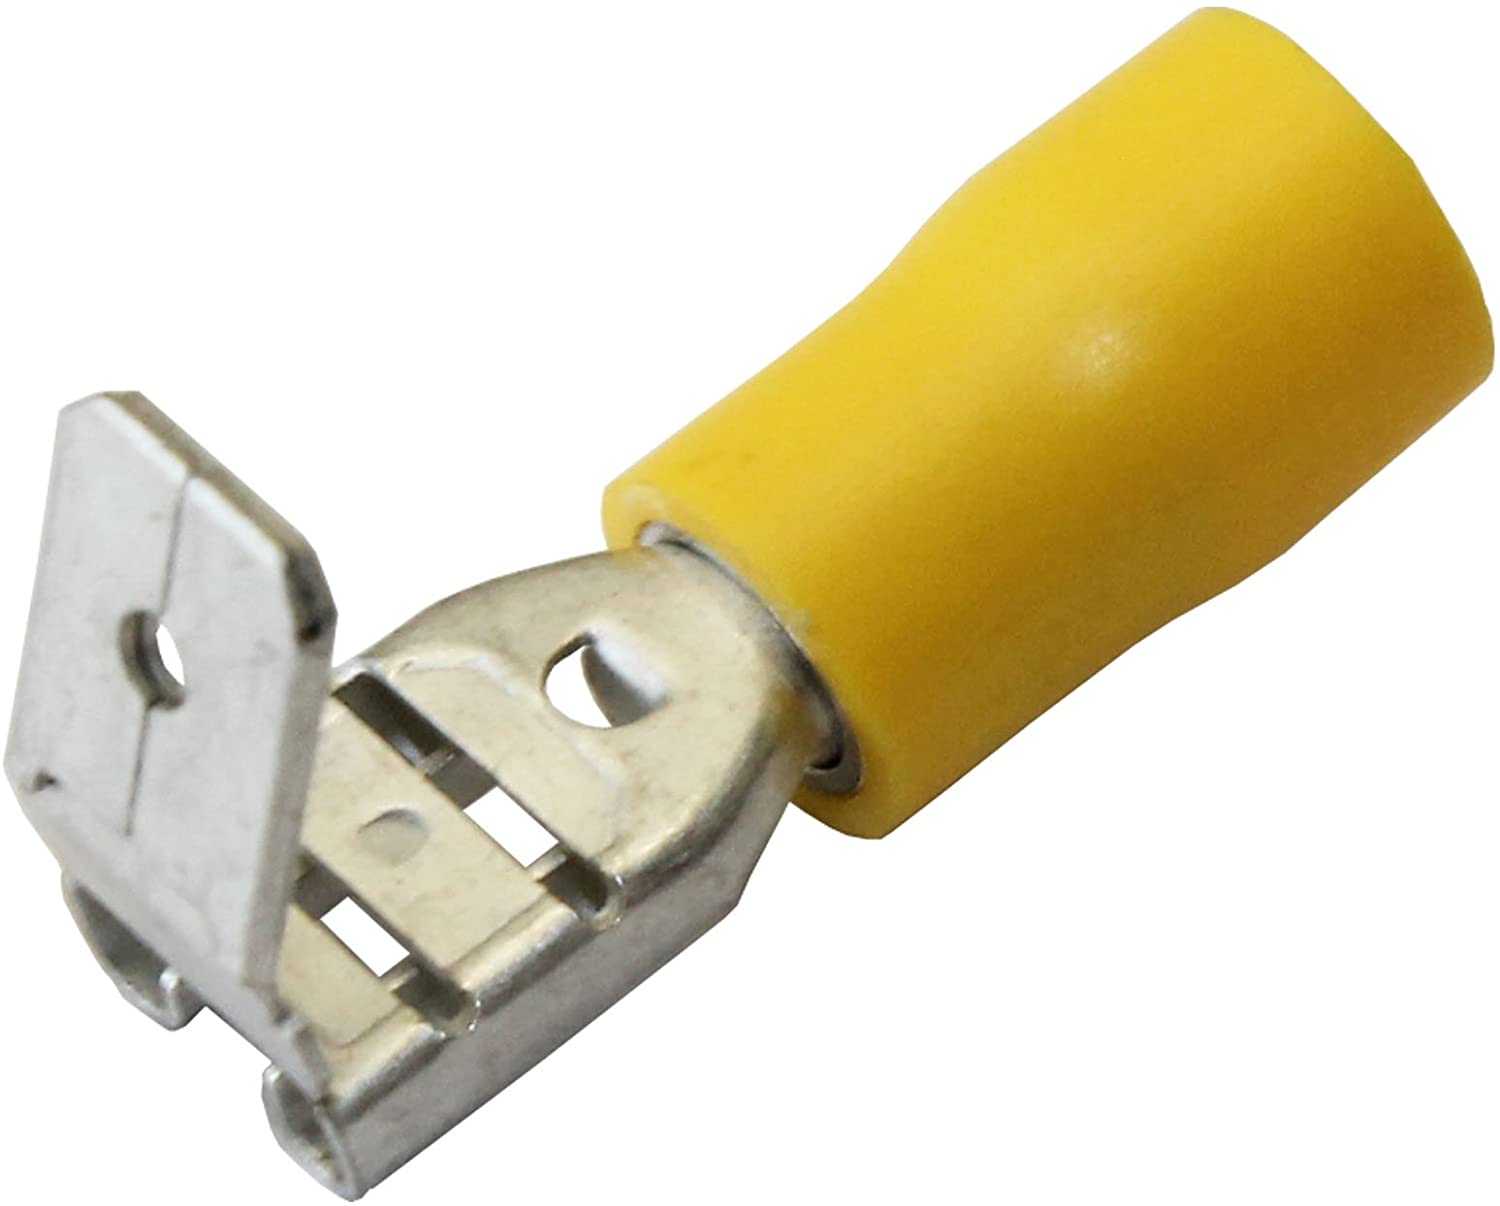 Yellow Piggy Back 6.3mm Spade Terminals / Pack of 100 - Electrical Connectors - spo-cs-disabled - spo-default - spo-dis